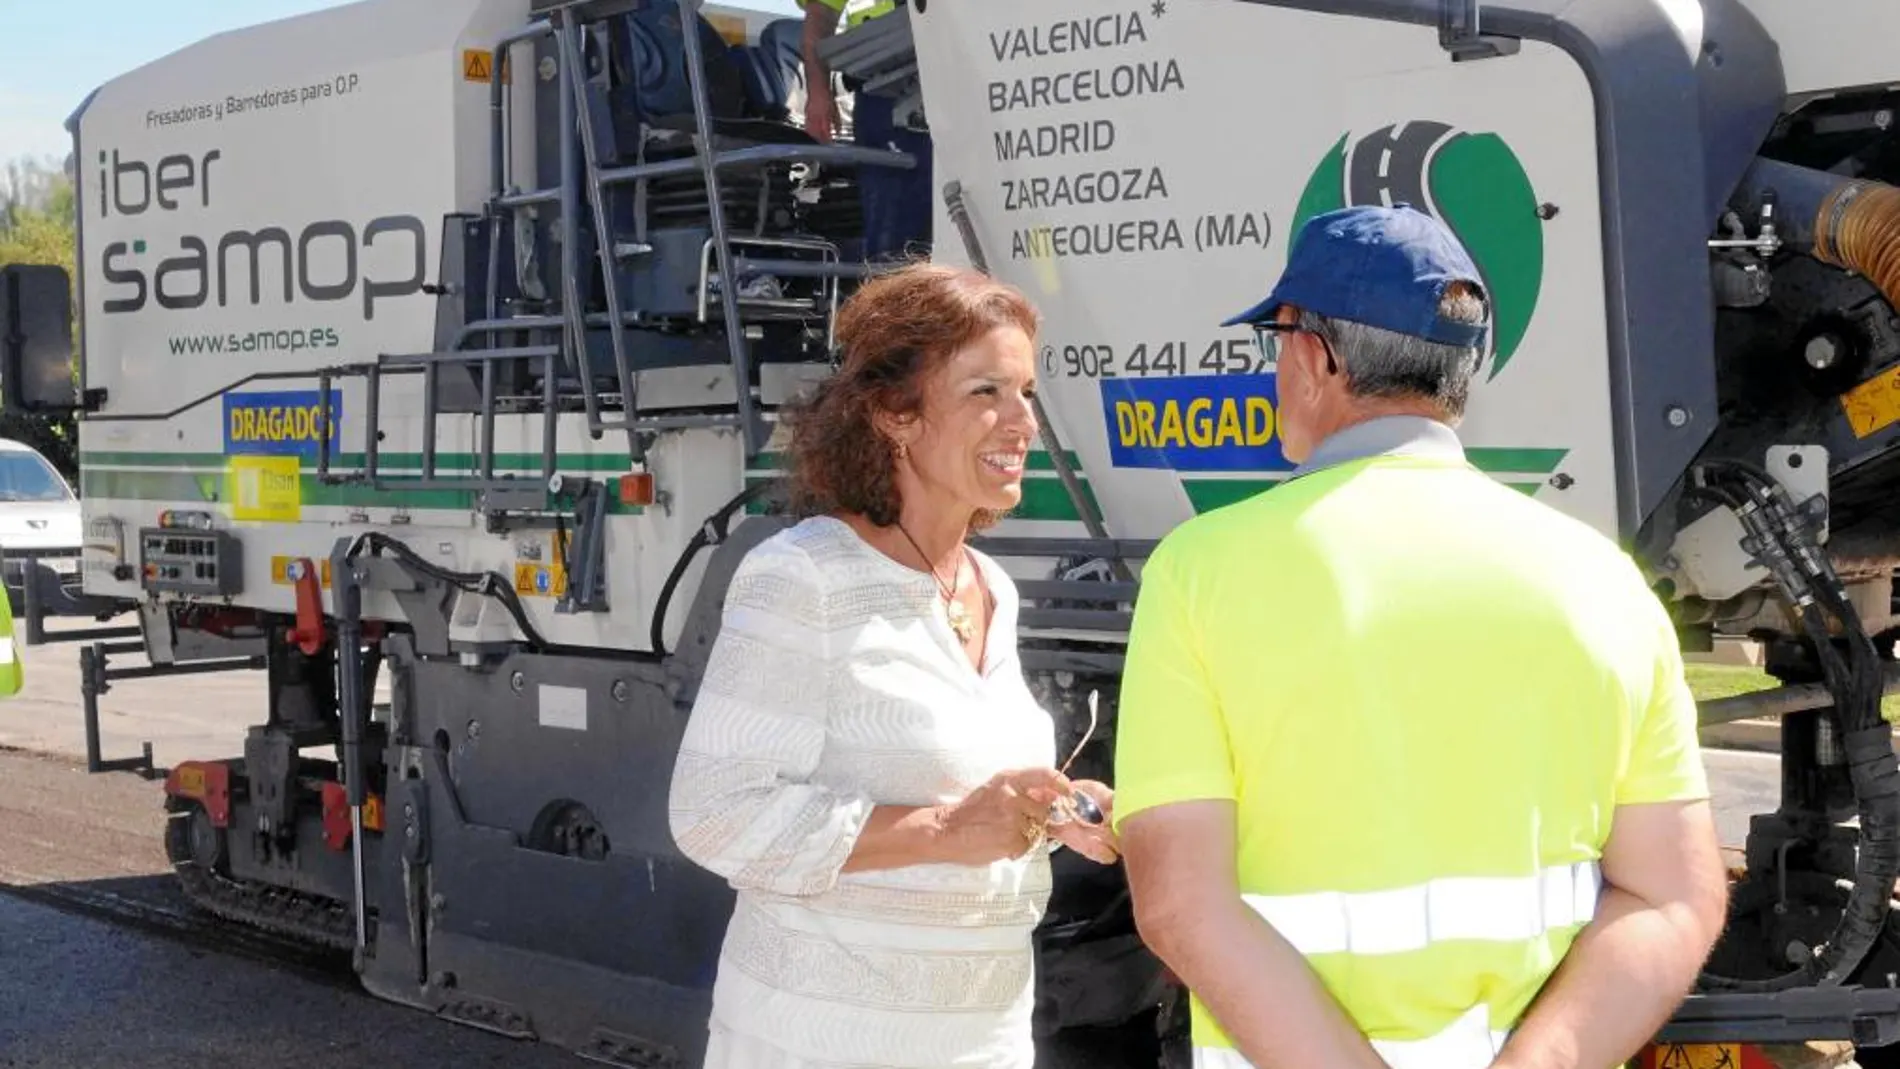 Está previsto que el asfaltado del Paseo de la Castellana concluya a primeros de septiembre. La alcaldesa de Madrid, Ana Botella, visitó ayer los trabajos que se realizan junto a las cuatro torres